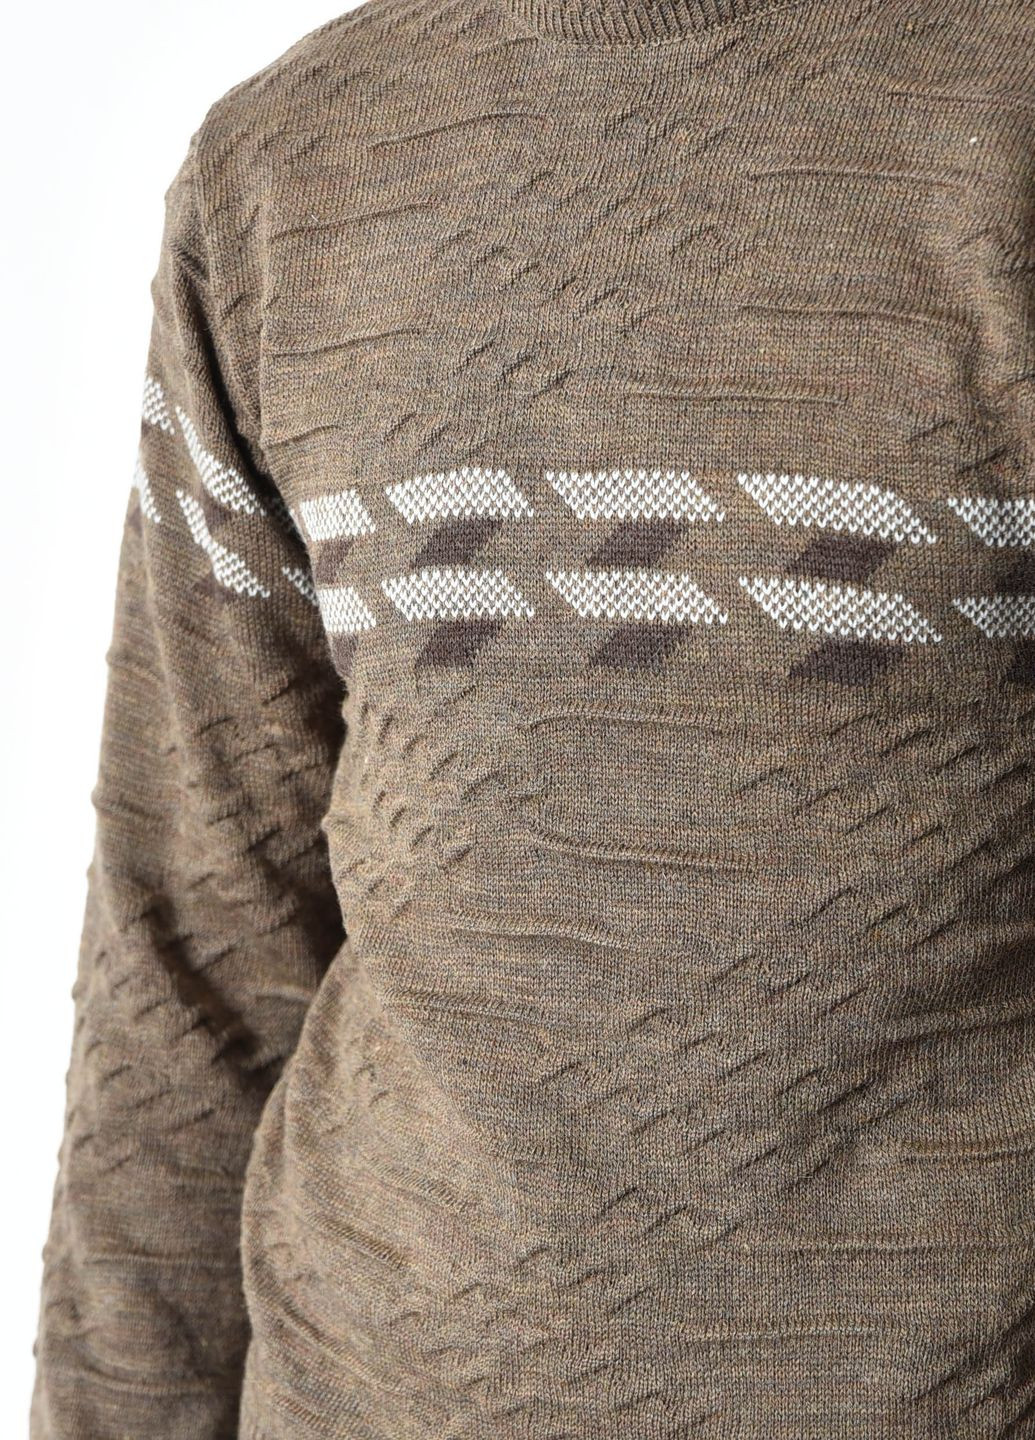 Коричневый демисезонный свитер мужской однотонный коричневого цвета пуловер Let's Shop